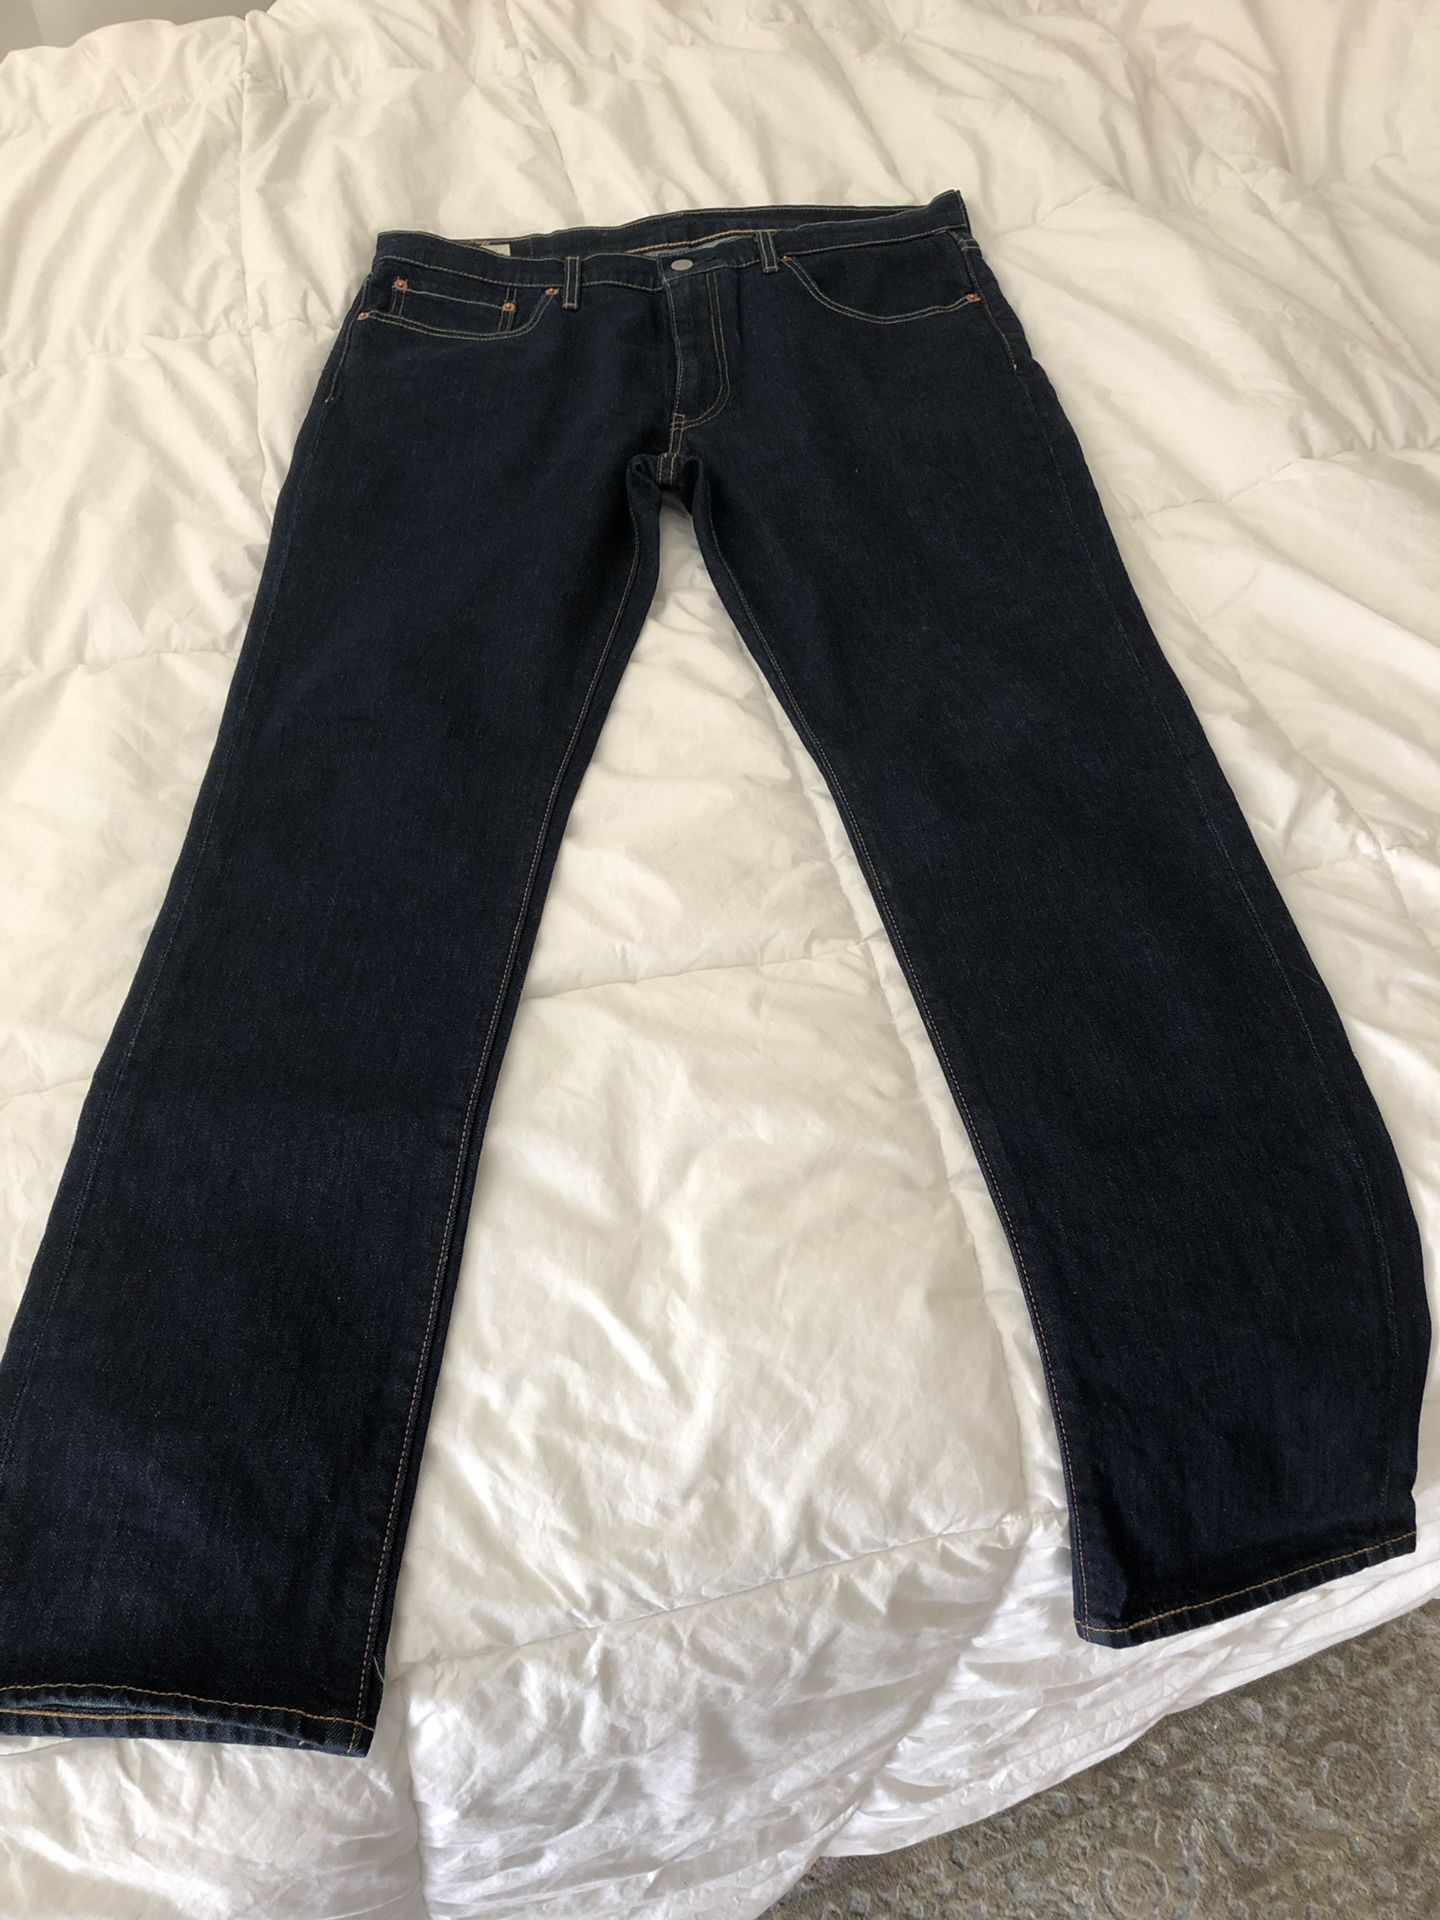 Men’s Levi’s 36X32 Slim Fit Jeans